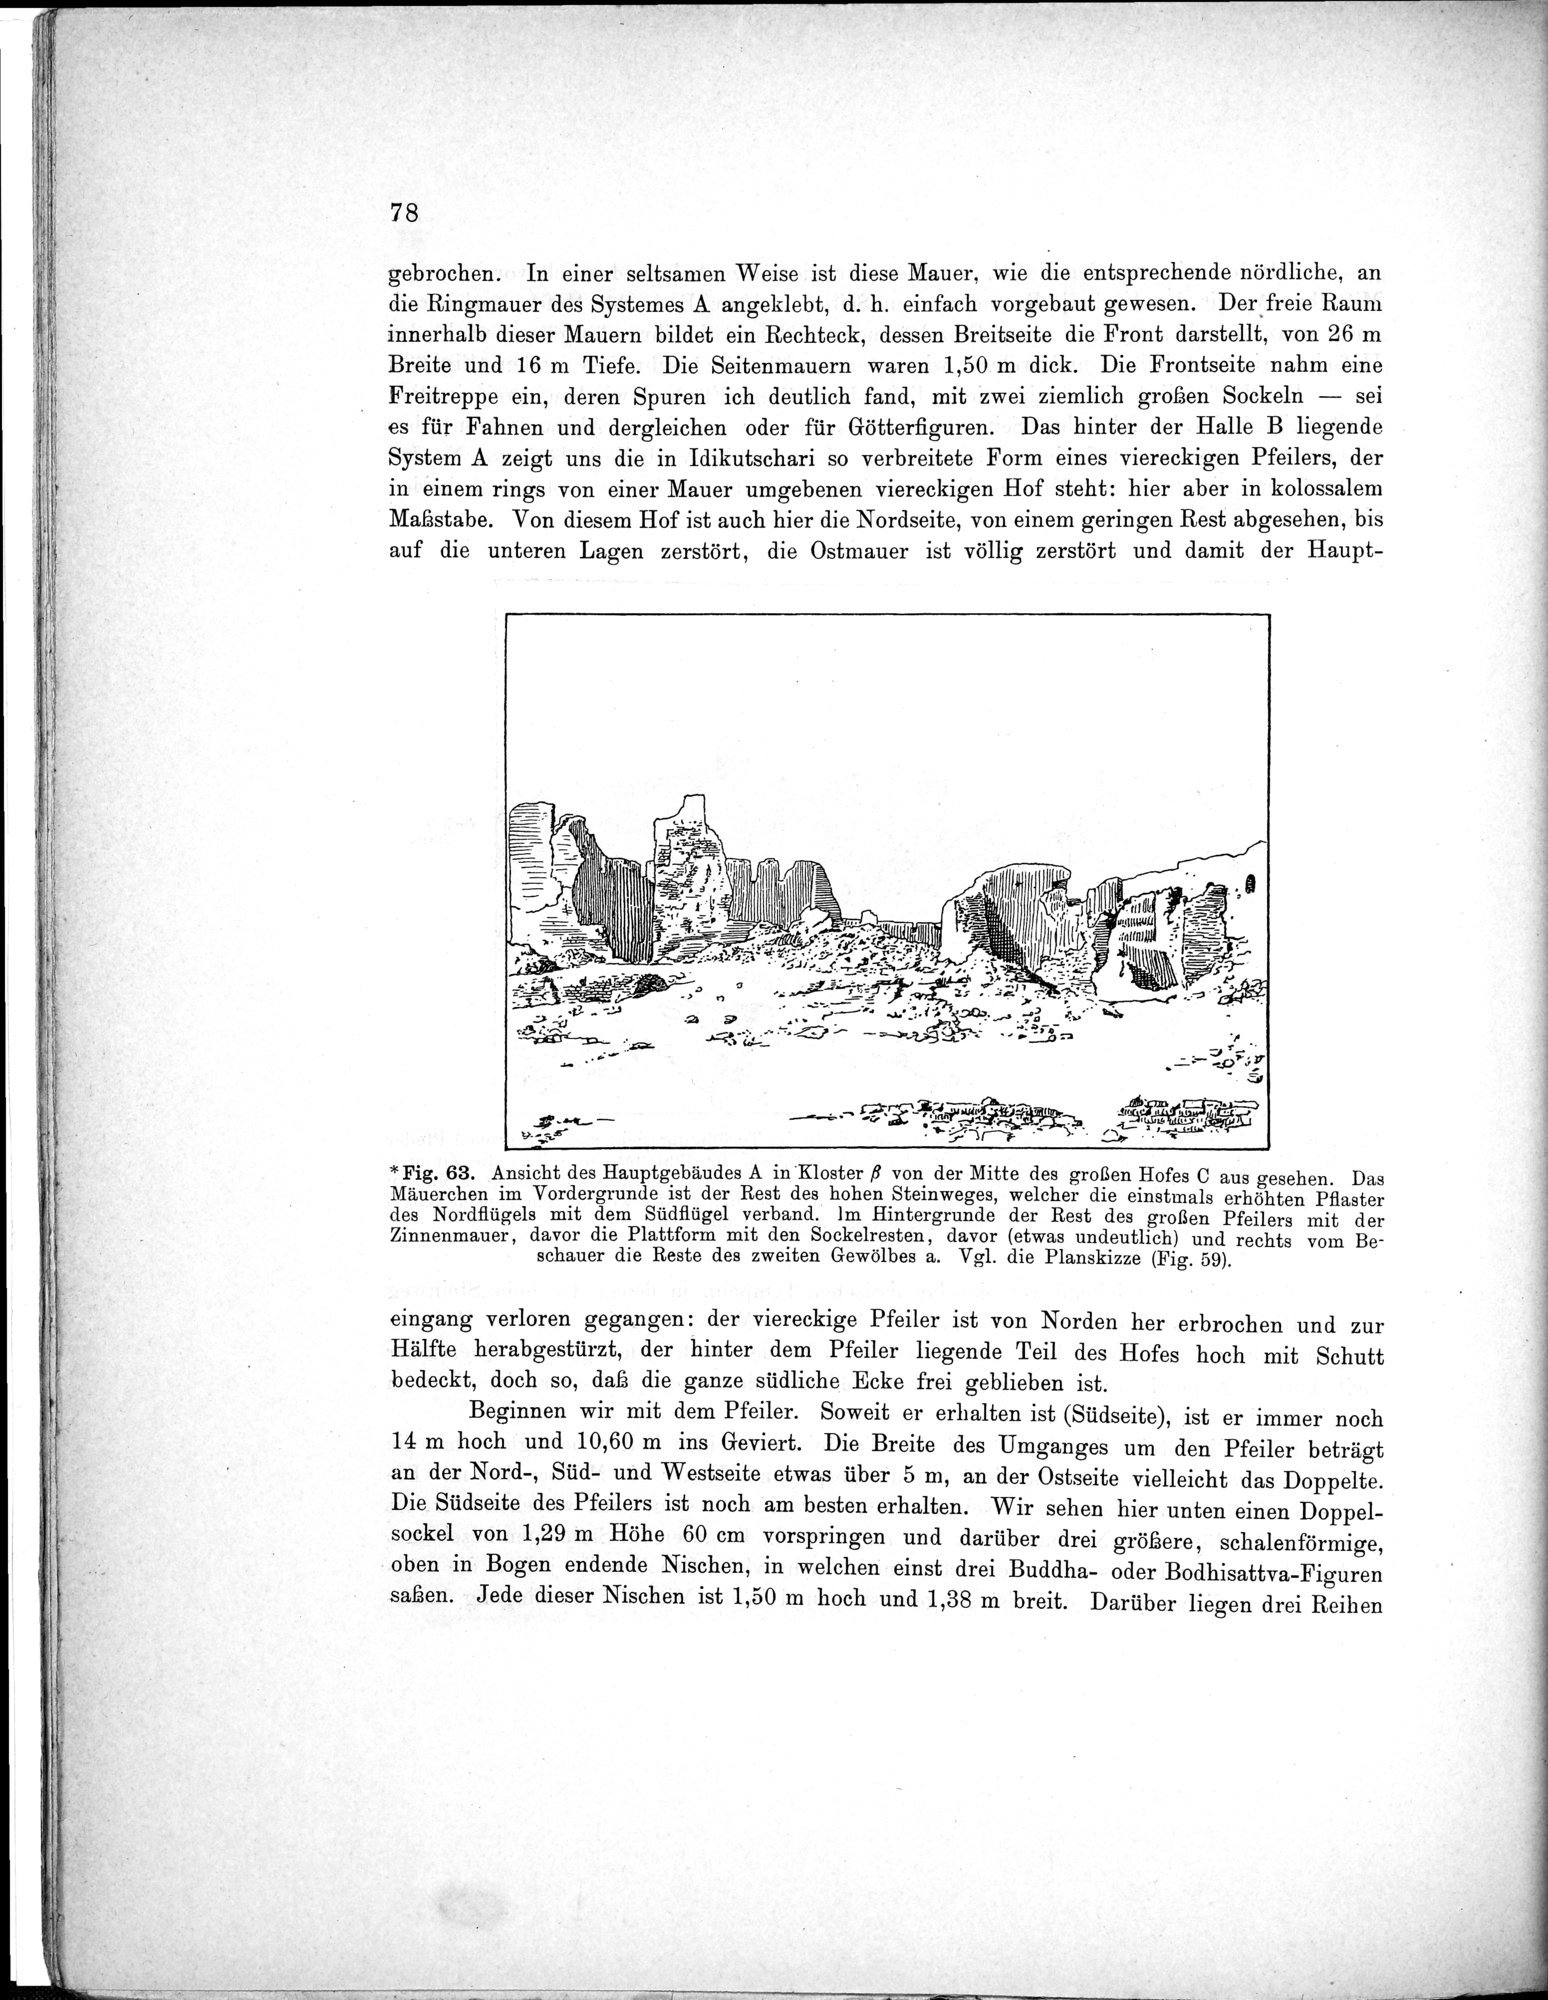 Bericht über archäologische Arbeiten in Idikutschari und Umgebung im Winter 1902-1903 : vol.1 / Page 88 (Grayscale High Resolution Image)